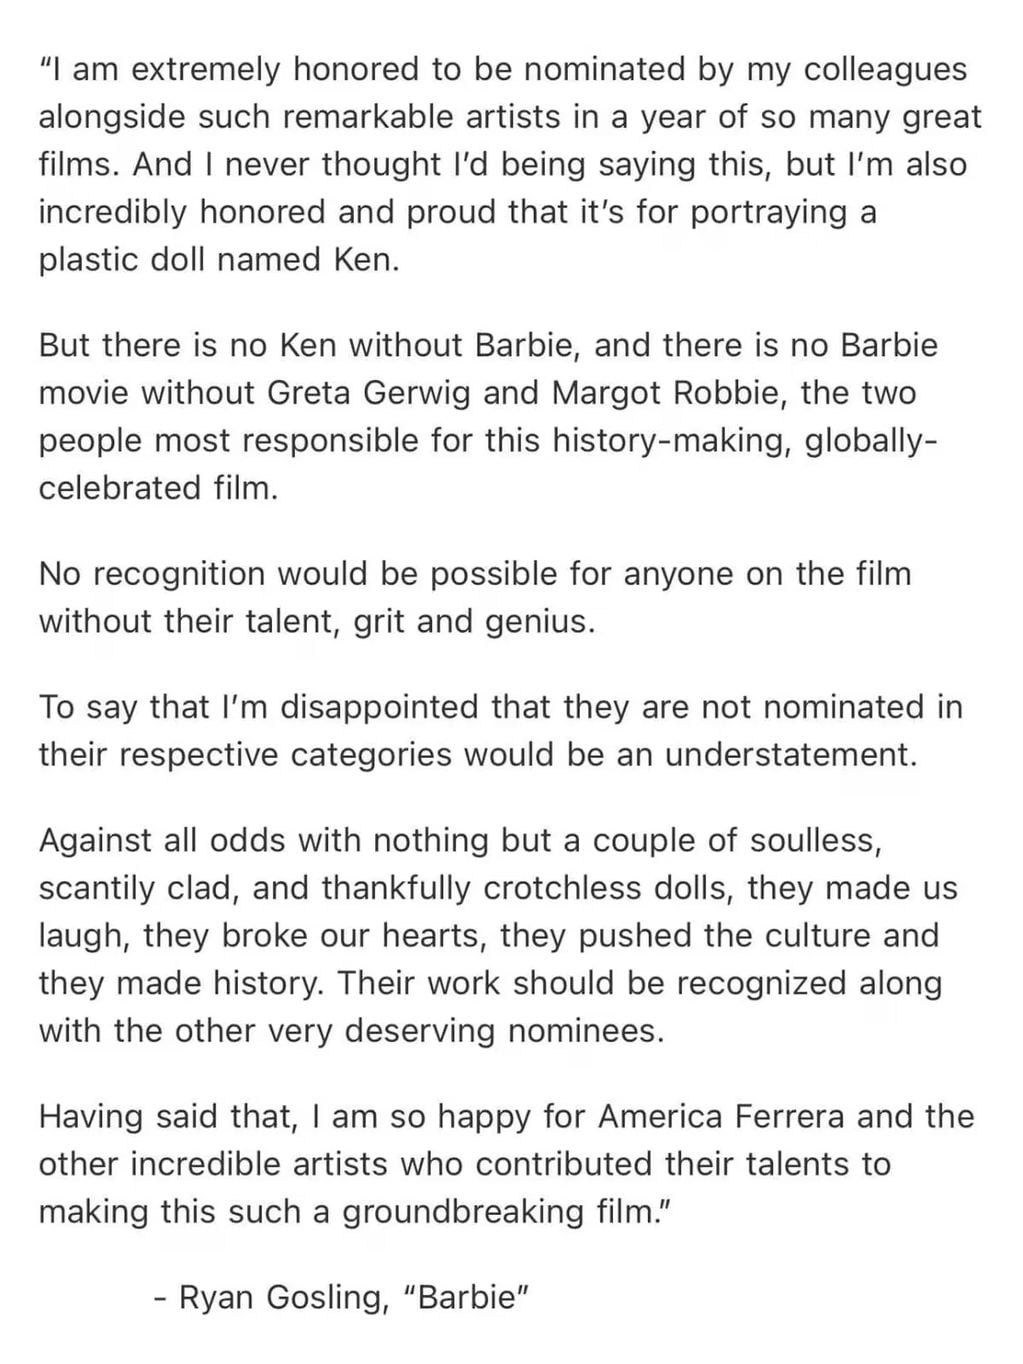 El comunicado de Ryan Gosling contra los Premios Oscar.